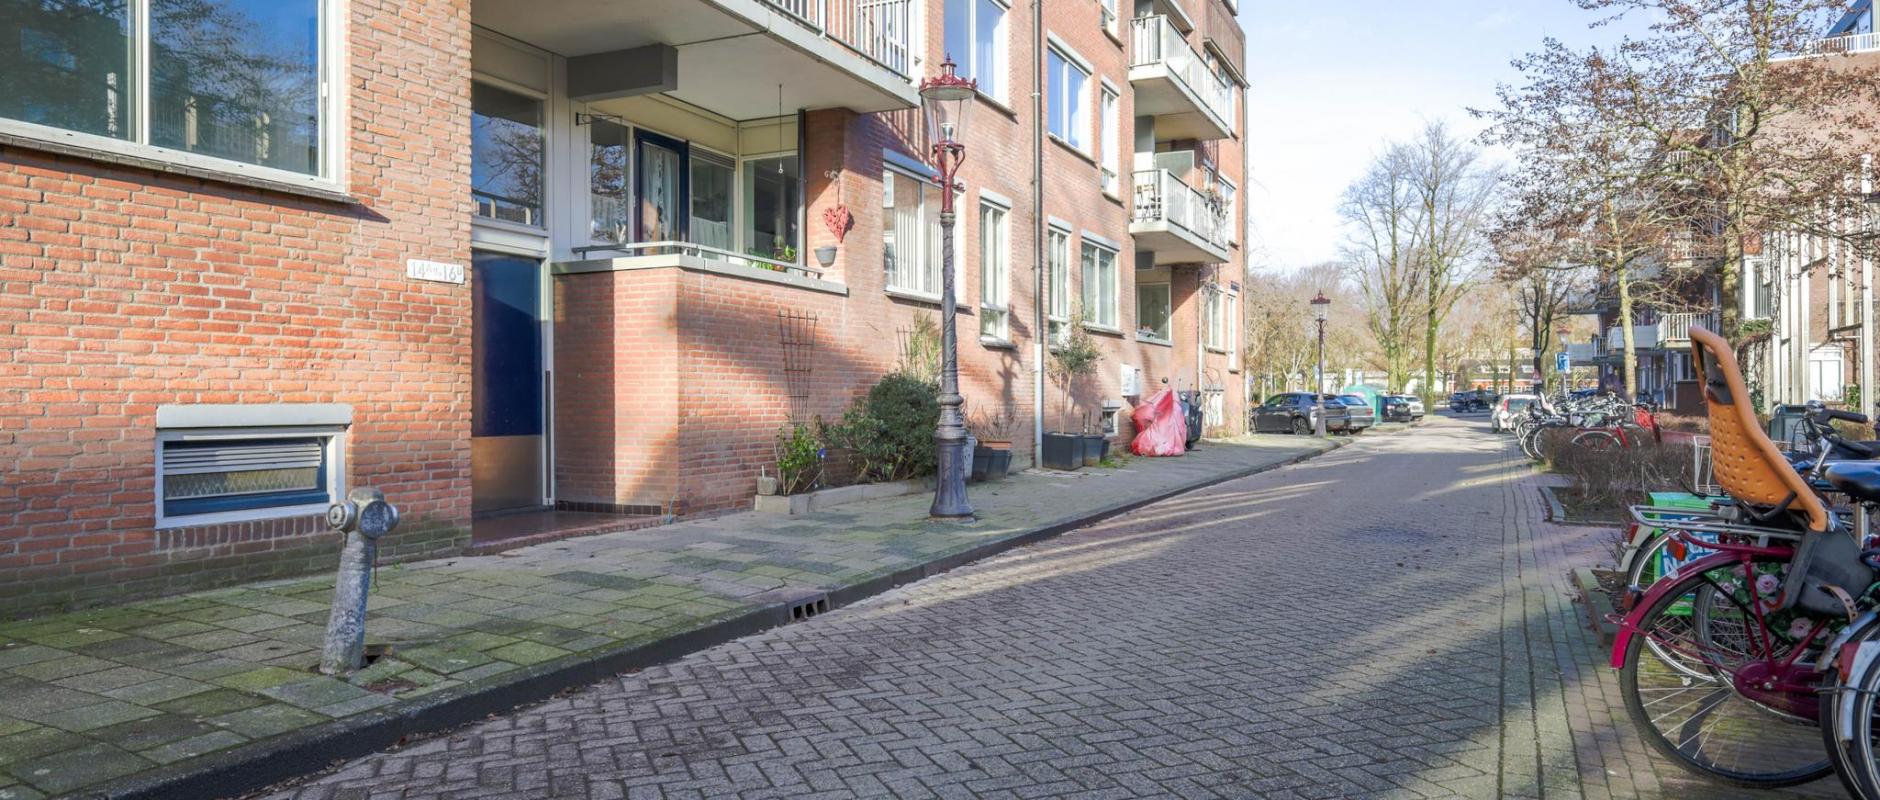 Woning te koop aan de Van Beuningenstraat 16A te Amsterdam